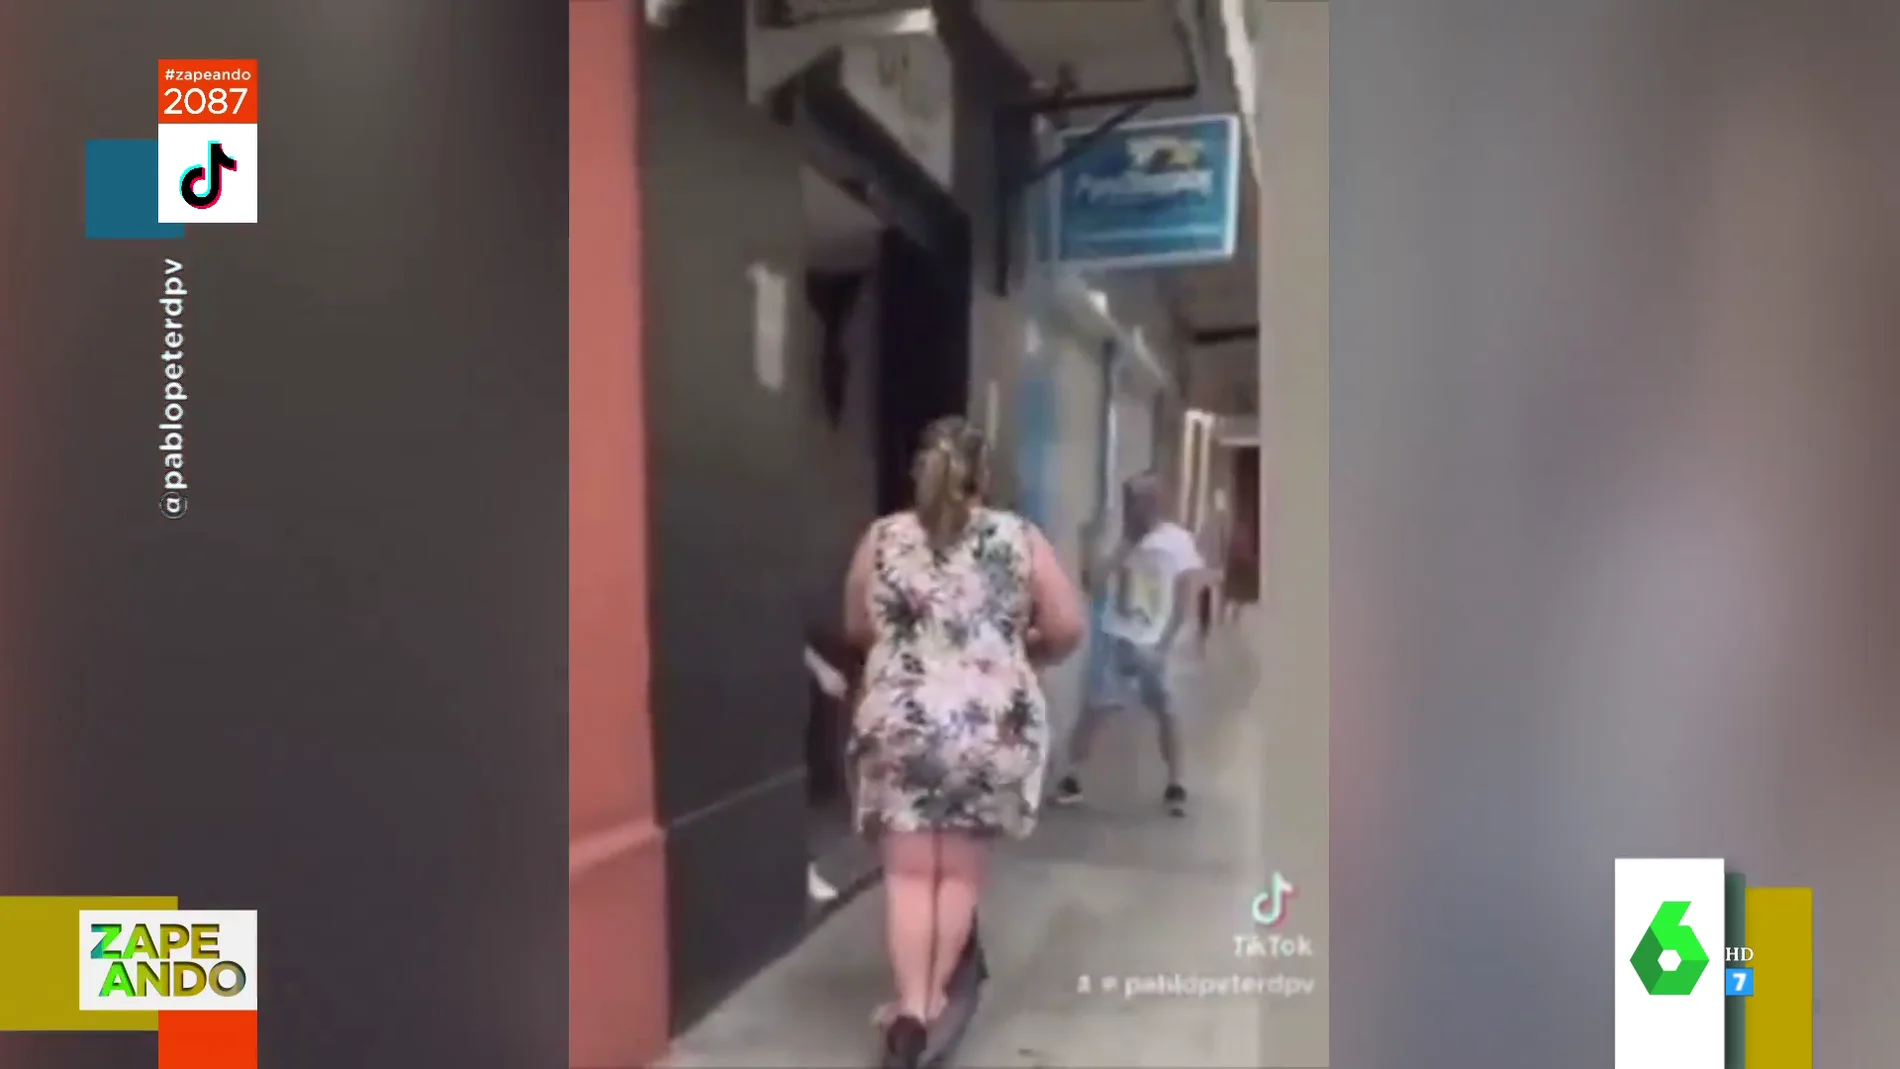 El vídeo viral de una señora circulando con un patinete que recuerda a la temporada del Barcelona: "El desenlace es poesía pura"